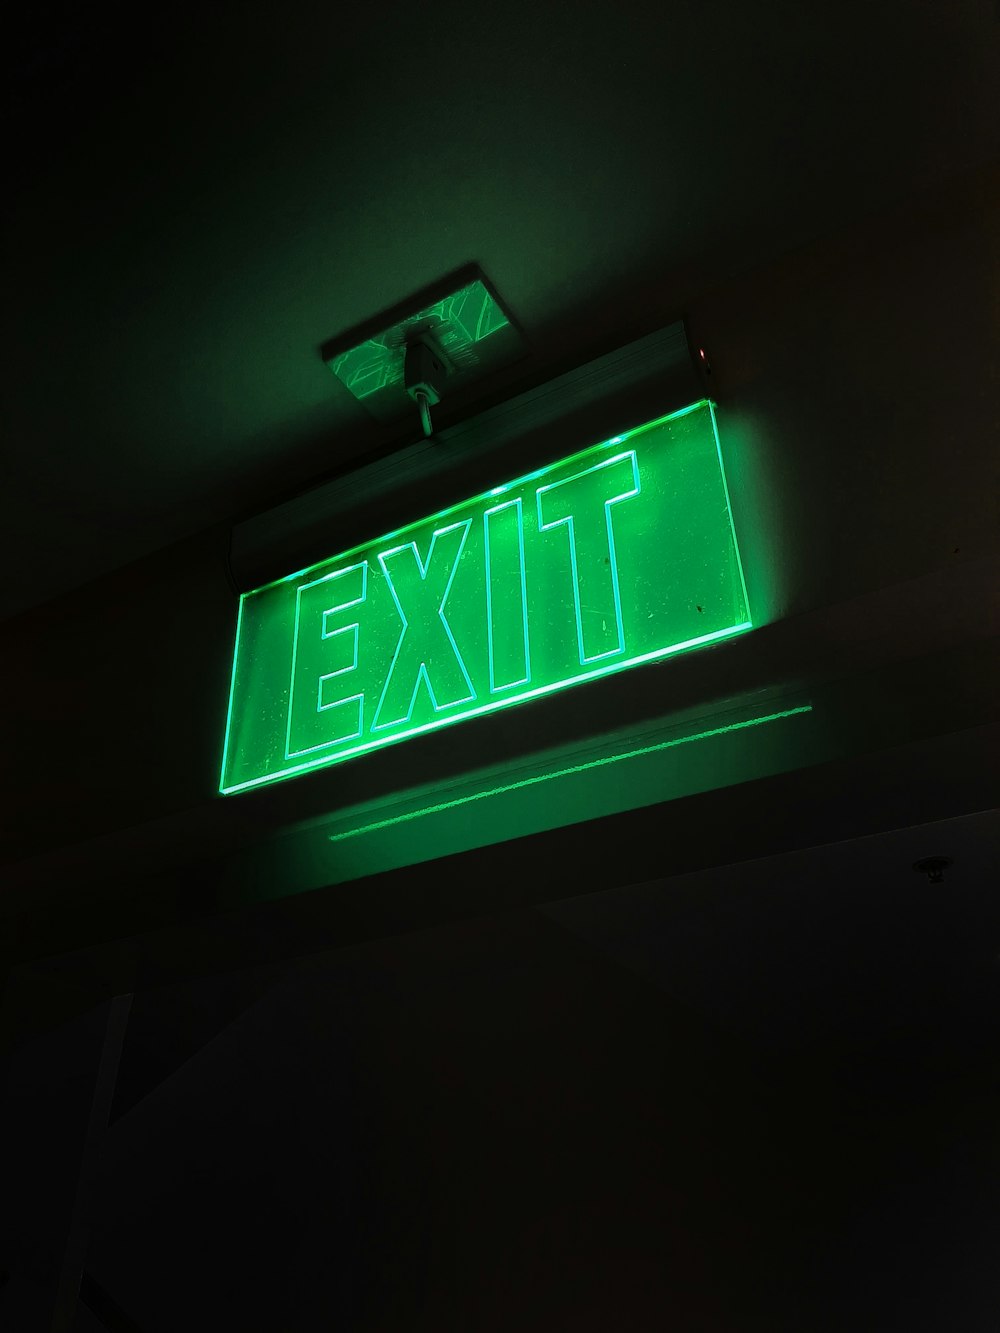 Màn hình thoát hiểm màu xanh, hay còn gọi là Green Exit Sign, thường xuyên xuất hiện trong các tòa nhà văn phòng và khu công nghiệp. Cùng chiêm ngưỡng vẻ đẹp đơn giản và hiệu quả của thông điệp an toàn này thông qua các hình ảnh độc đáo.